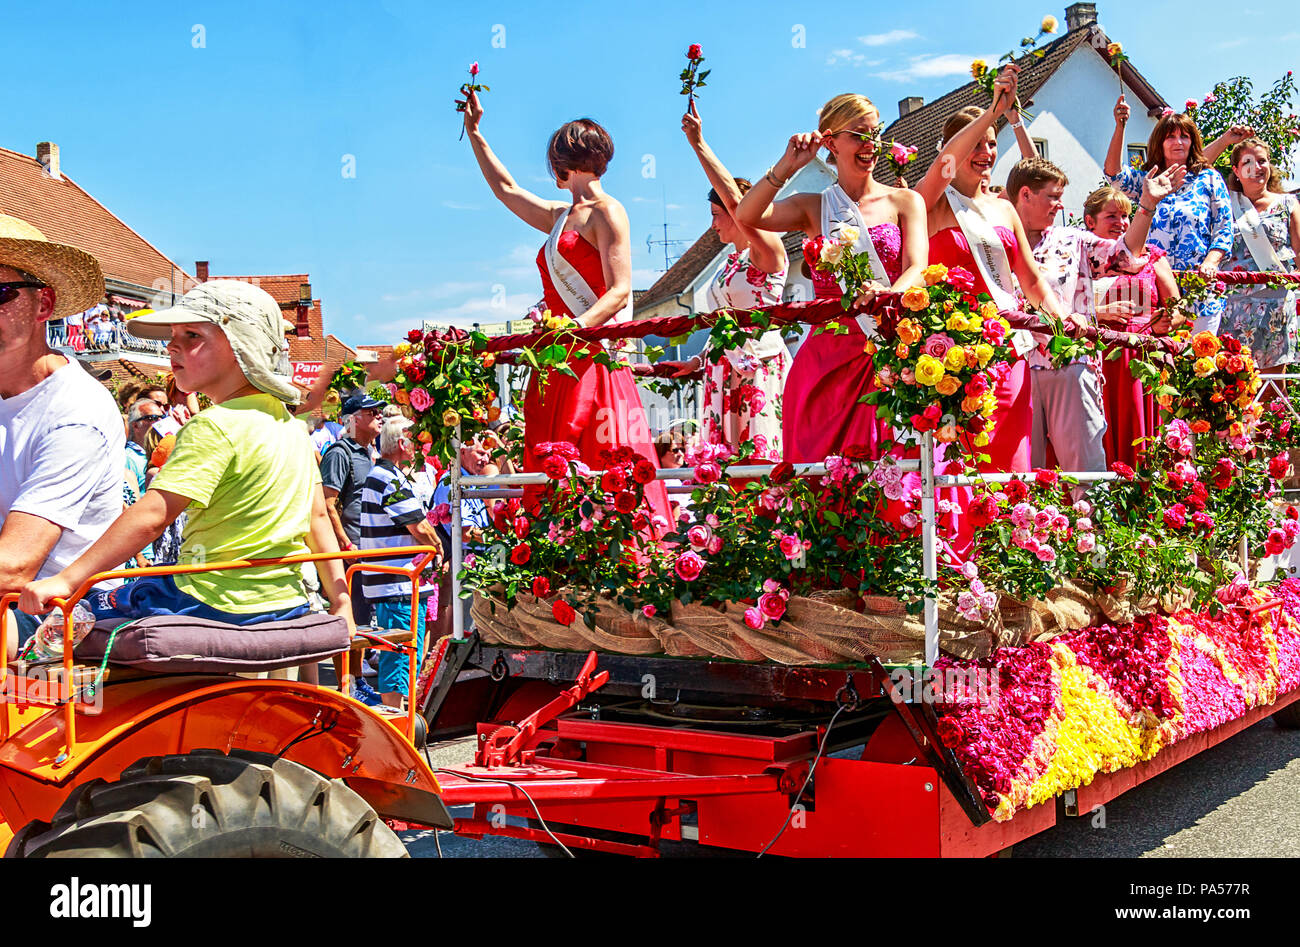 STEINFURTH, Deutschland - 15. JULI 2018: Traditionelle Rosenfest in Bad Nauheim Stadtteil Steinfurth, die älteste Rose Village in Deutschland. Stockfoto